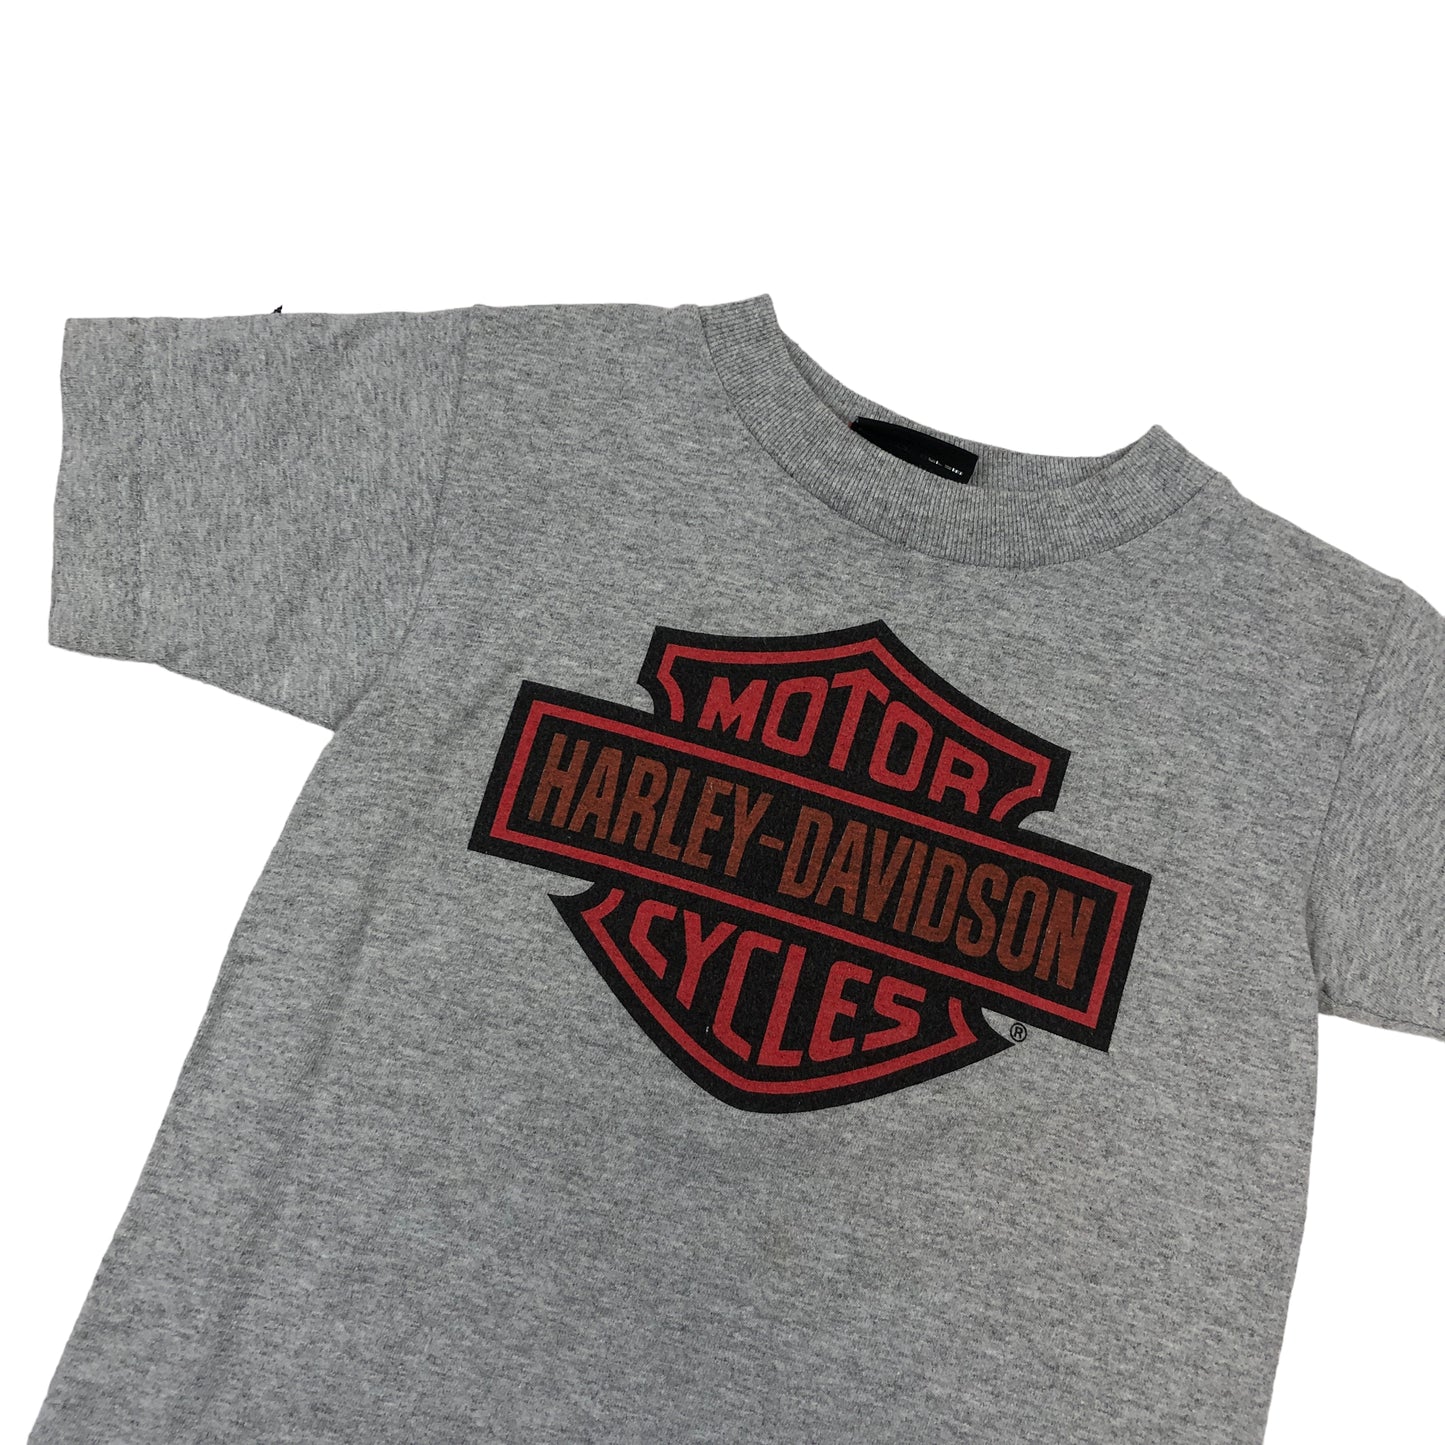 Vintage Harley Davidson T-Shirt (Age 4)